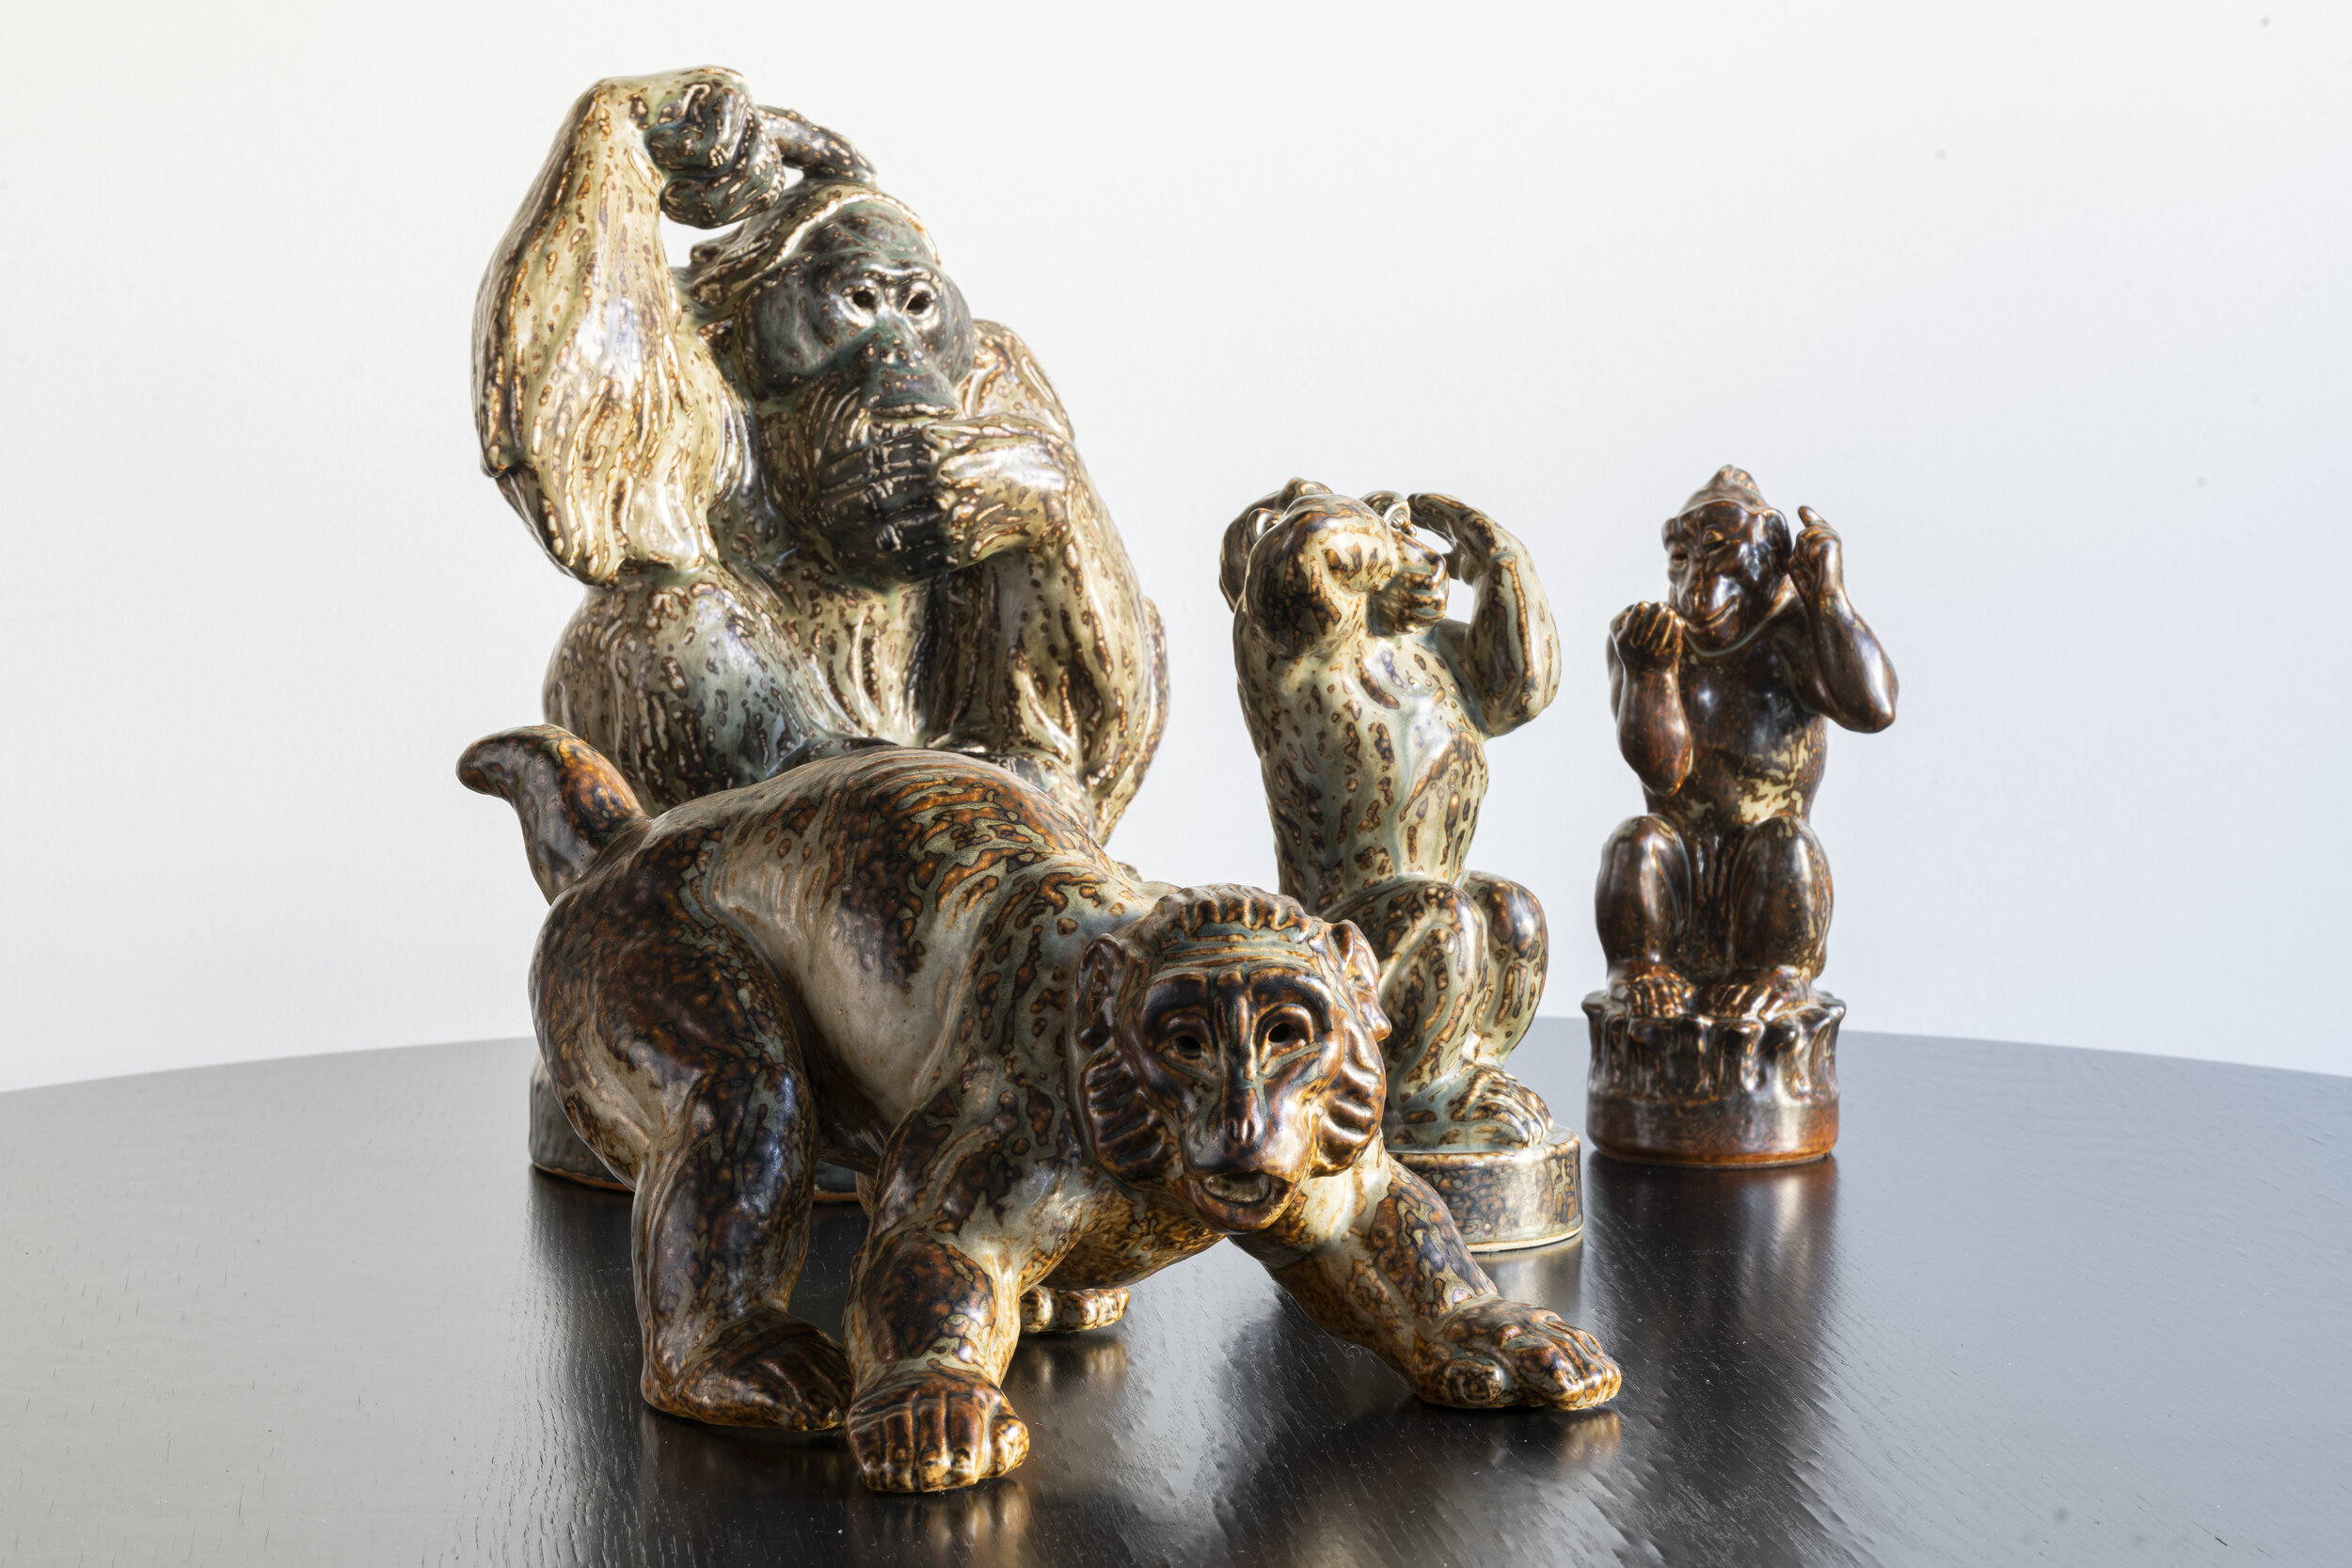 Royal Copenhagen Ceramic Monkeys and Orangutan